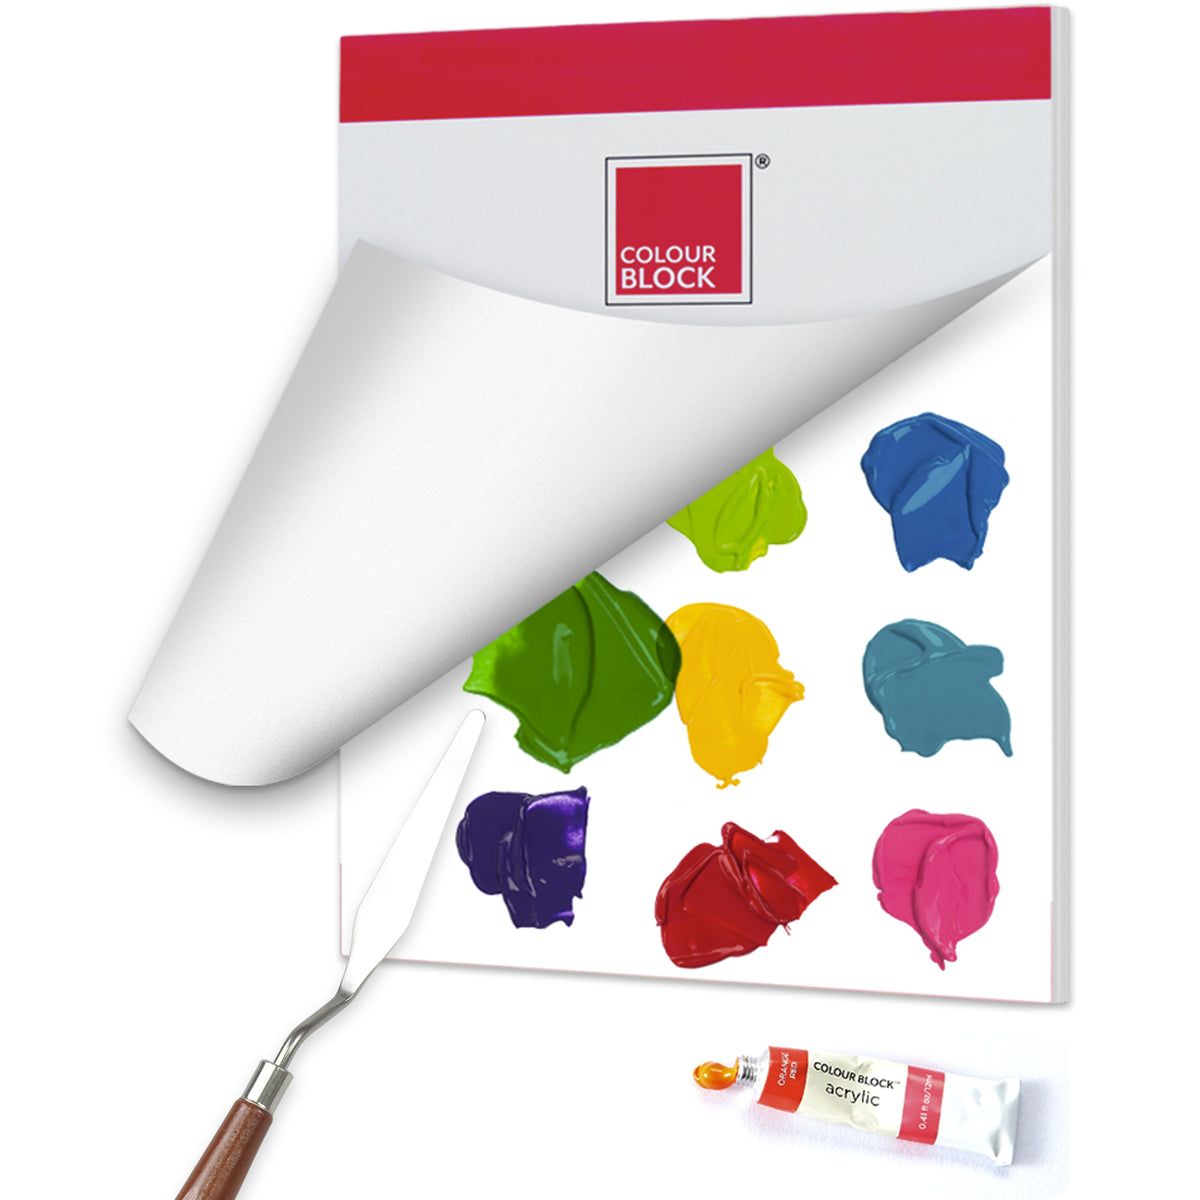 Colour Block Acrylic Paint Board Set - 4pc